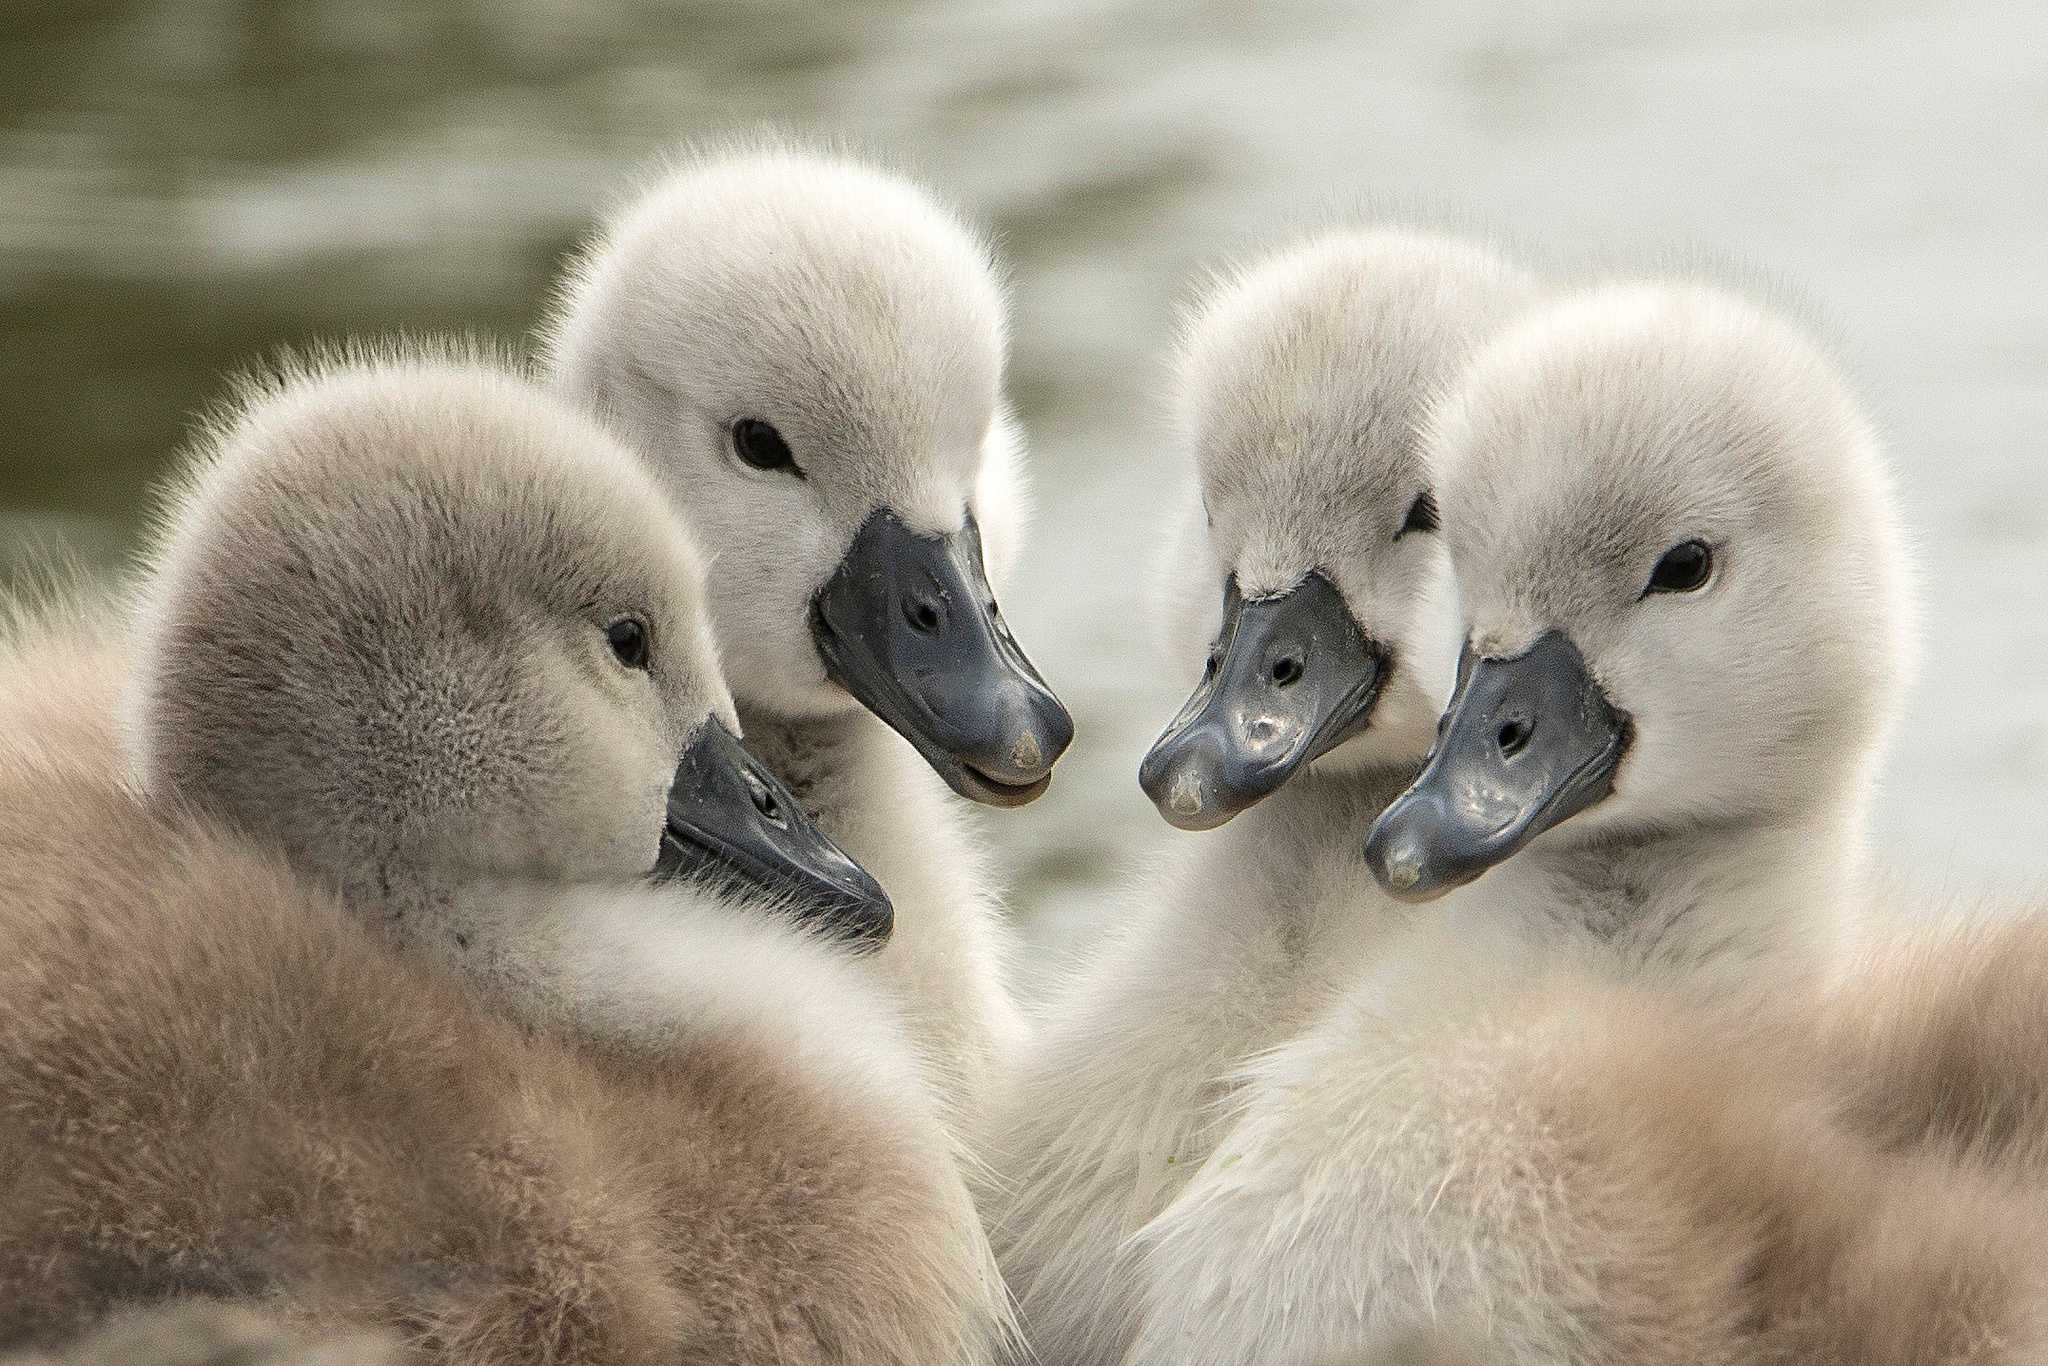 General 2048x1366 animals baby animals swans closeup beak blurry background blurred fur